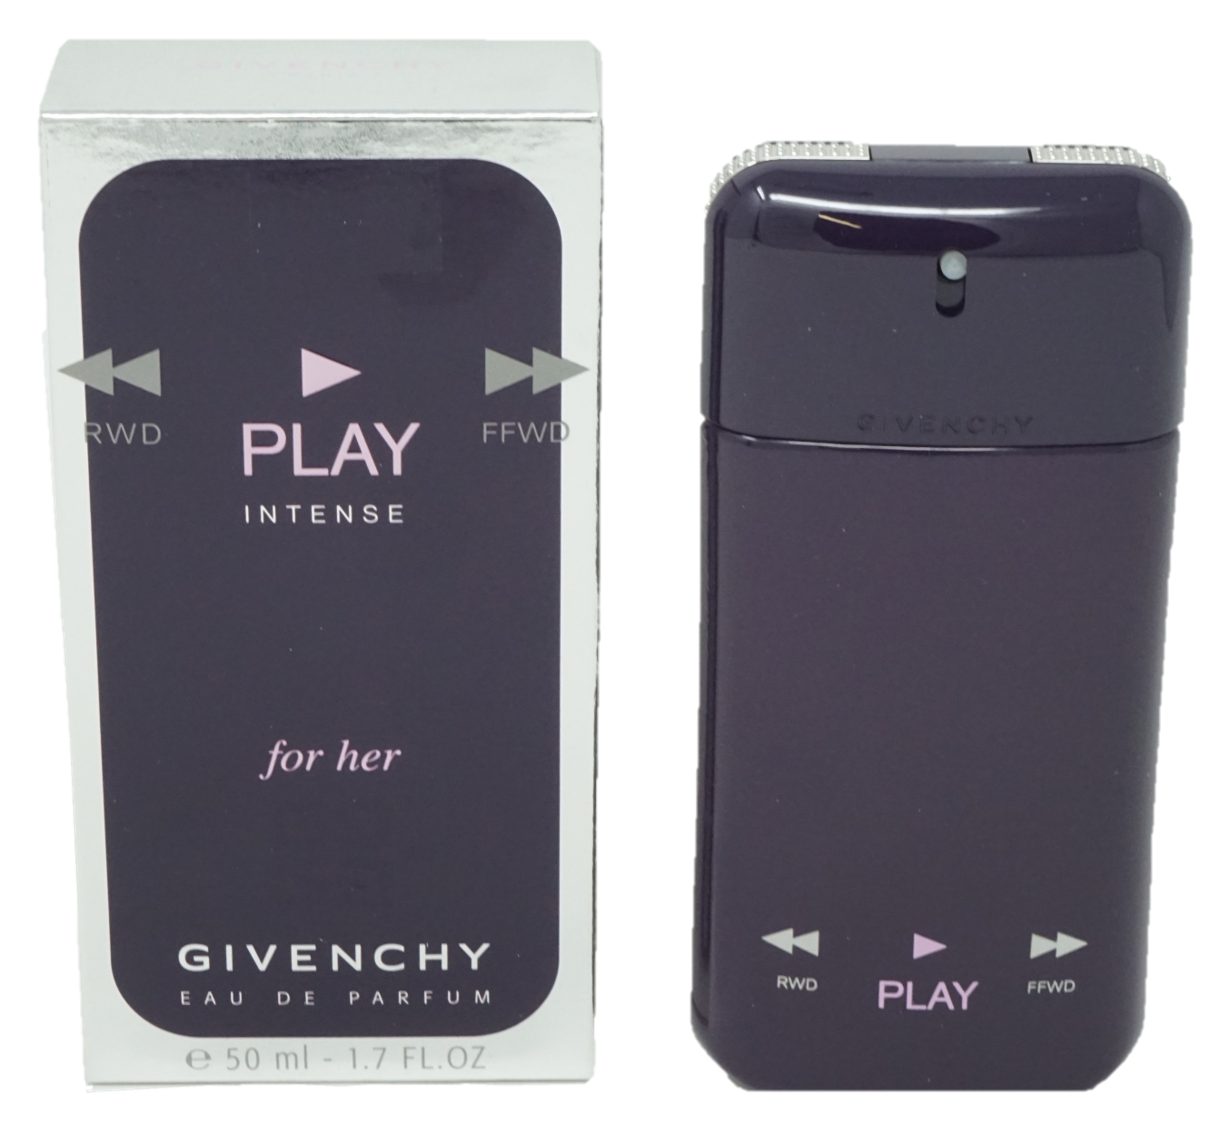 GIVENCHY Eau Intense Parfum Givenchy Her Parfum For Play de Eau de 50ml